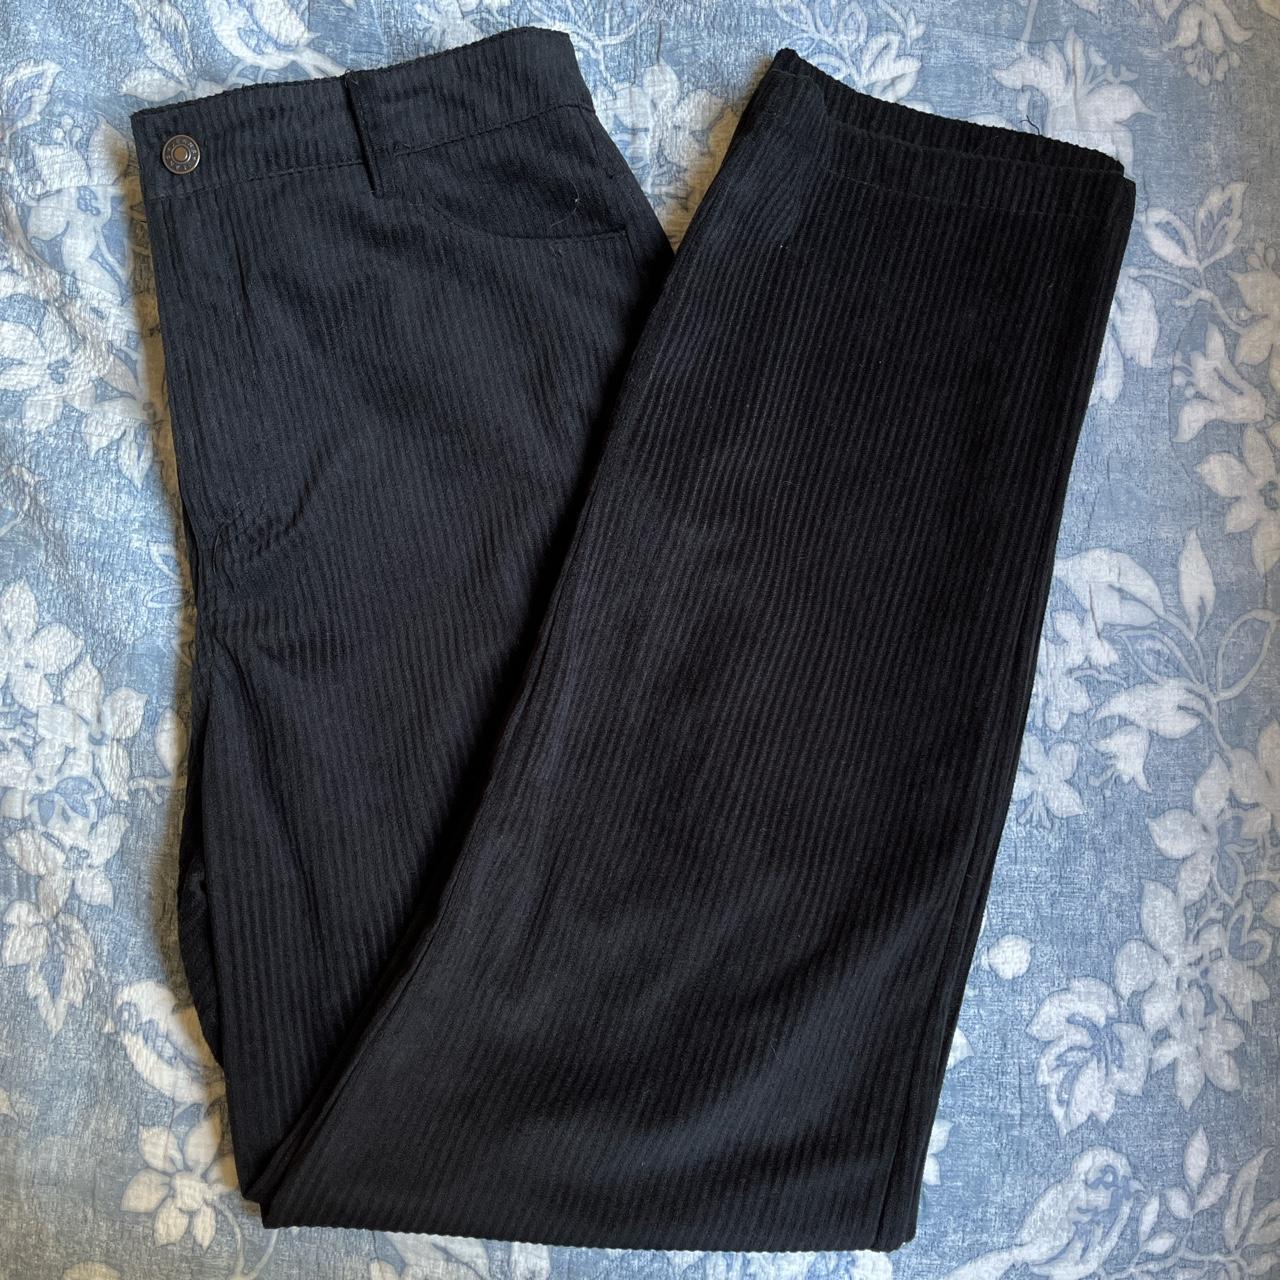 ZAFUL Women's Black Trousers